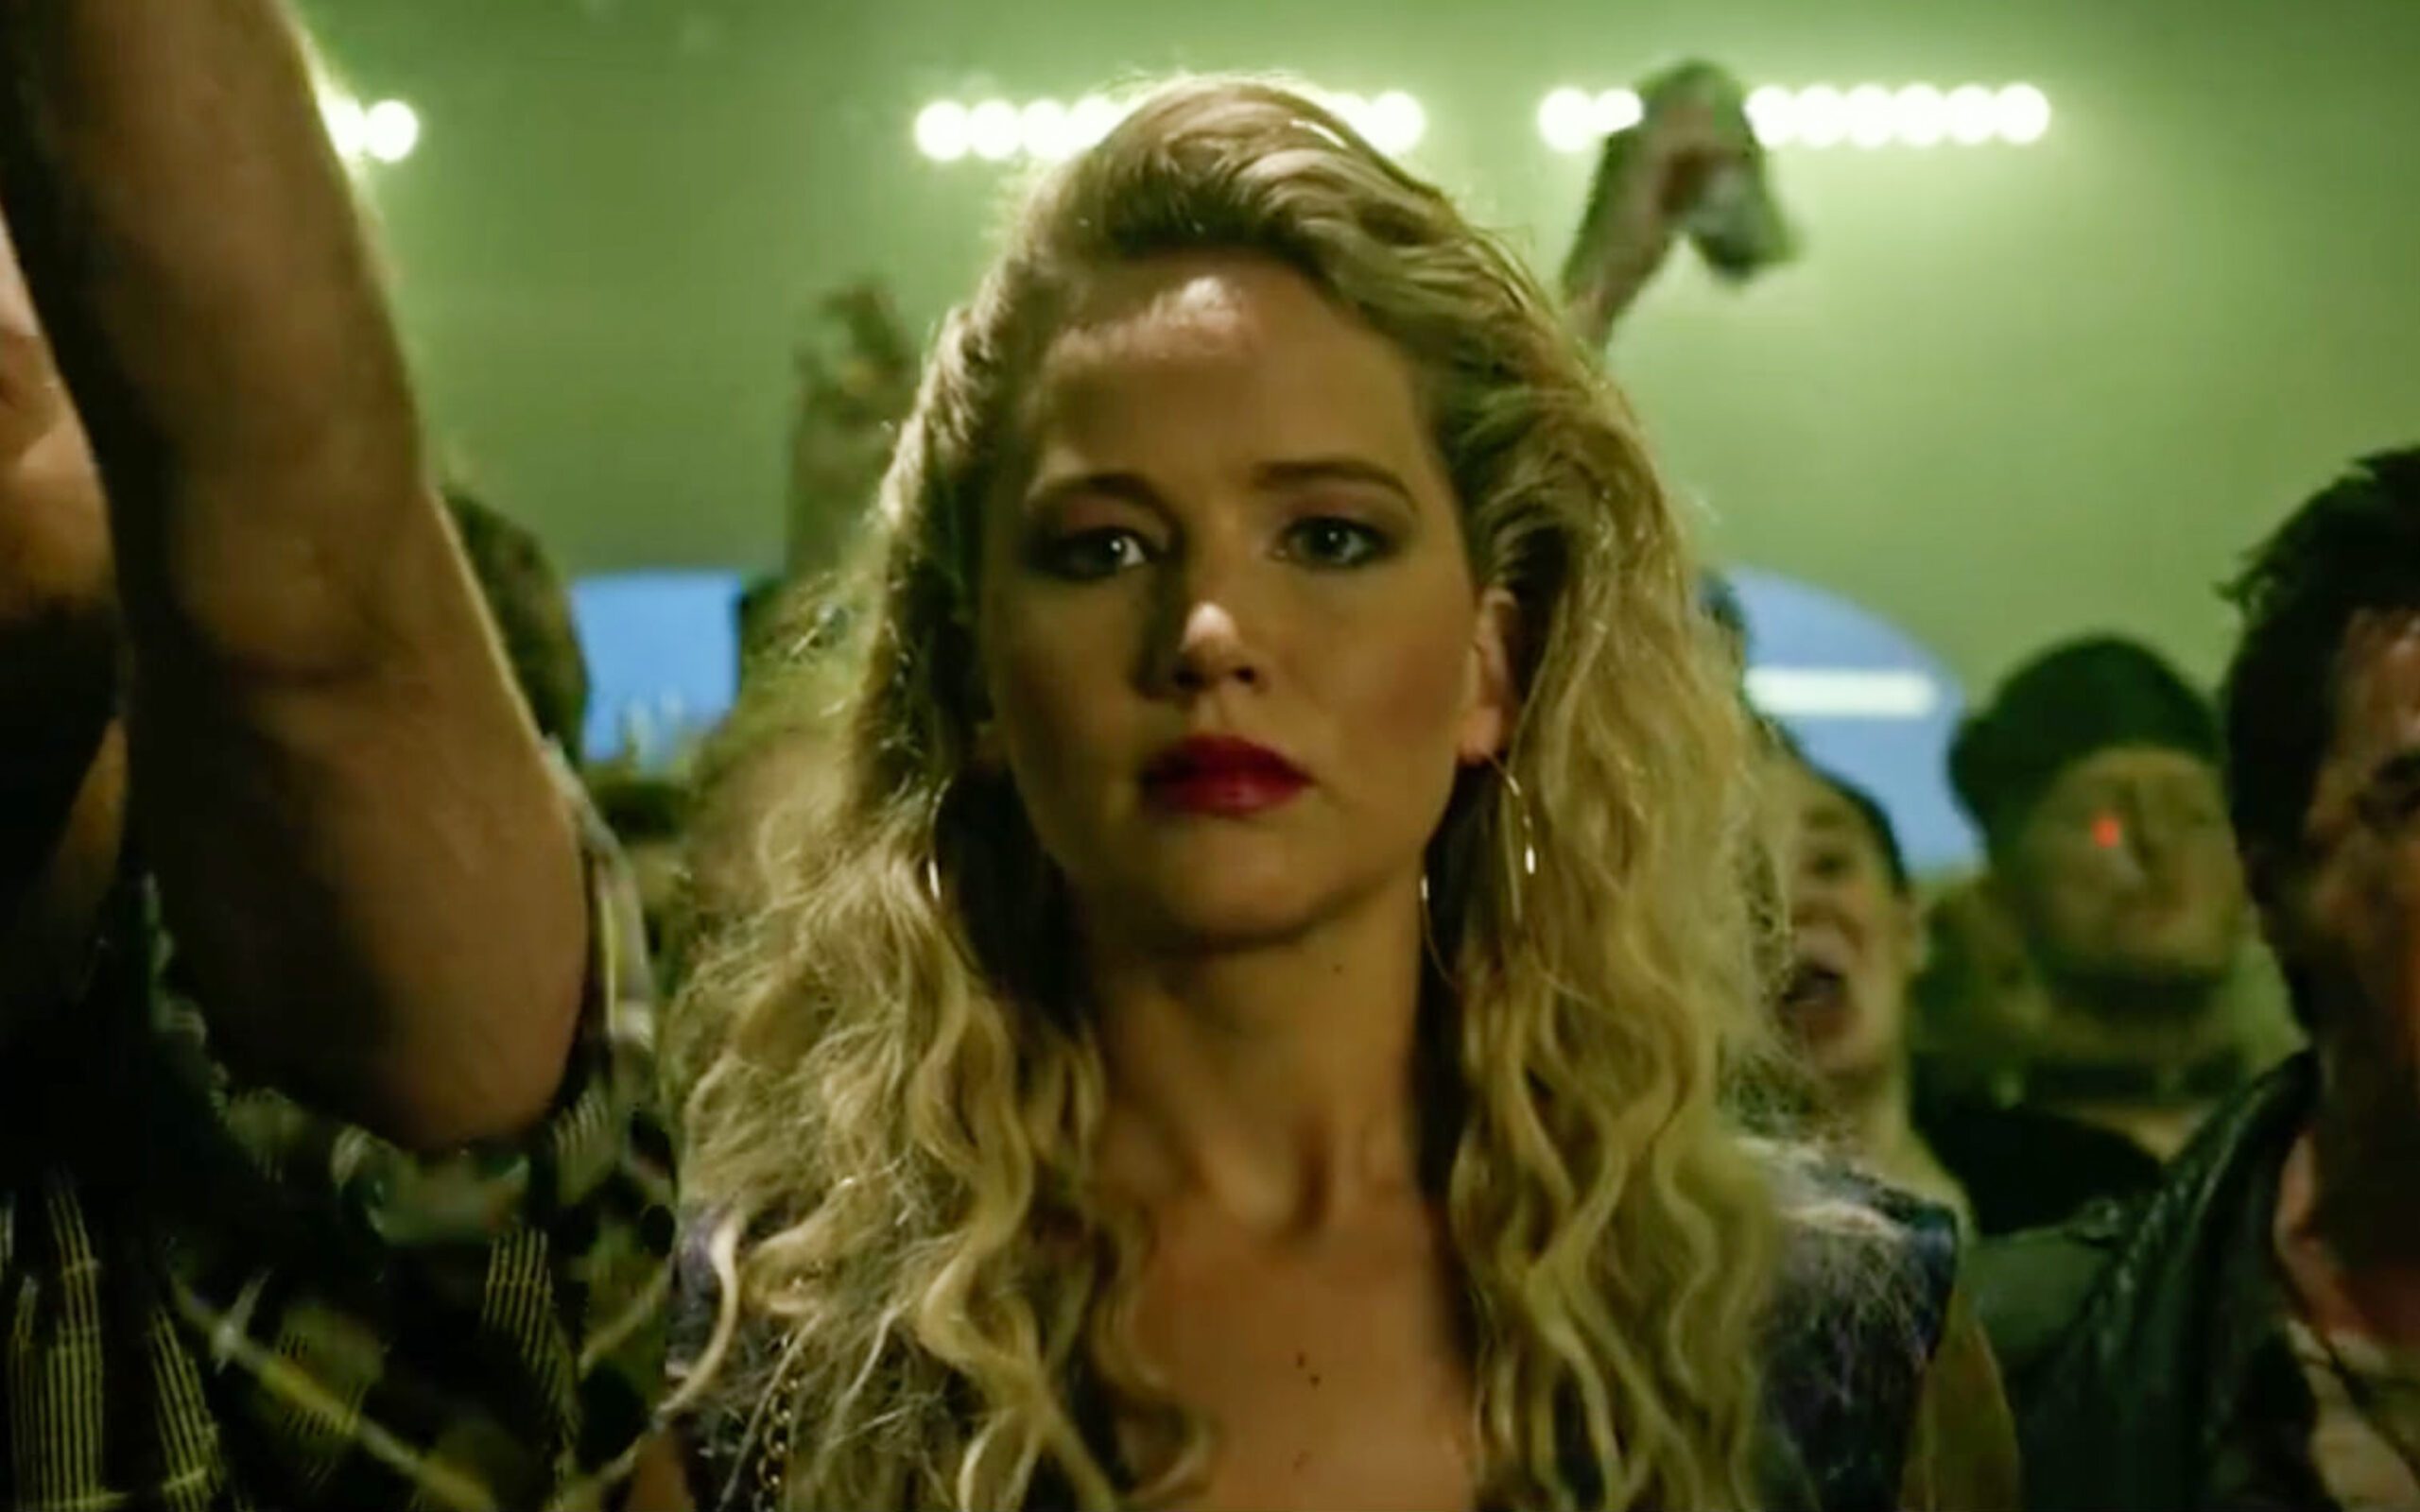 WATCH: Jennifer Lawrence in new ‘X-Men: Apocalypse’ clip